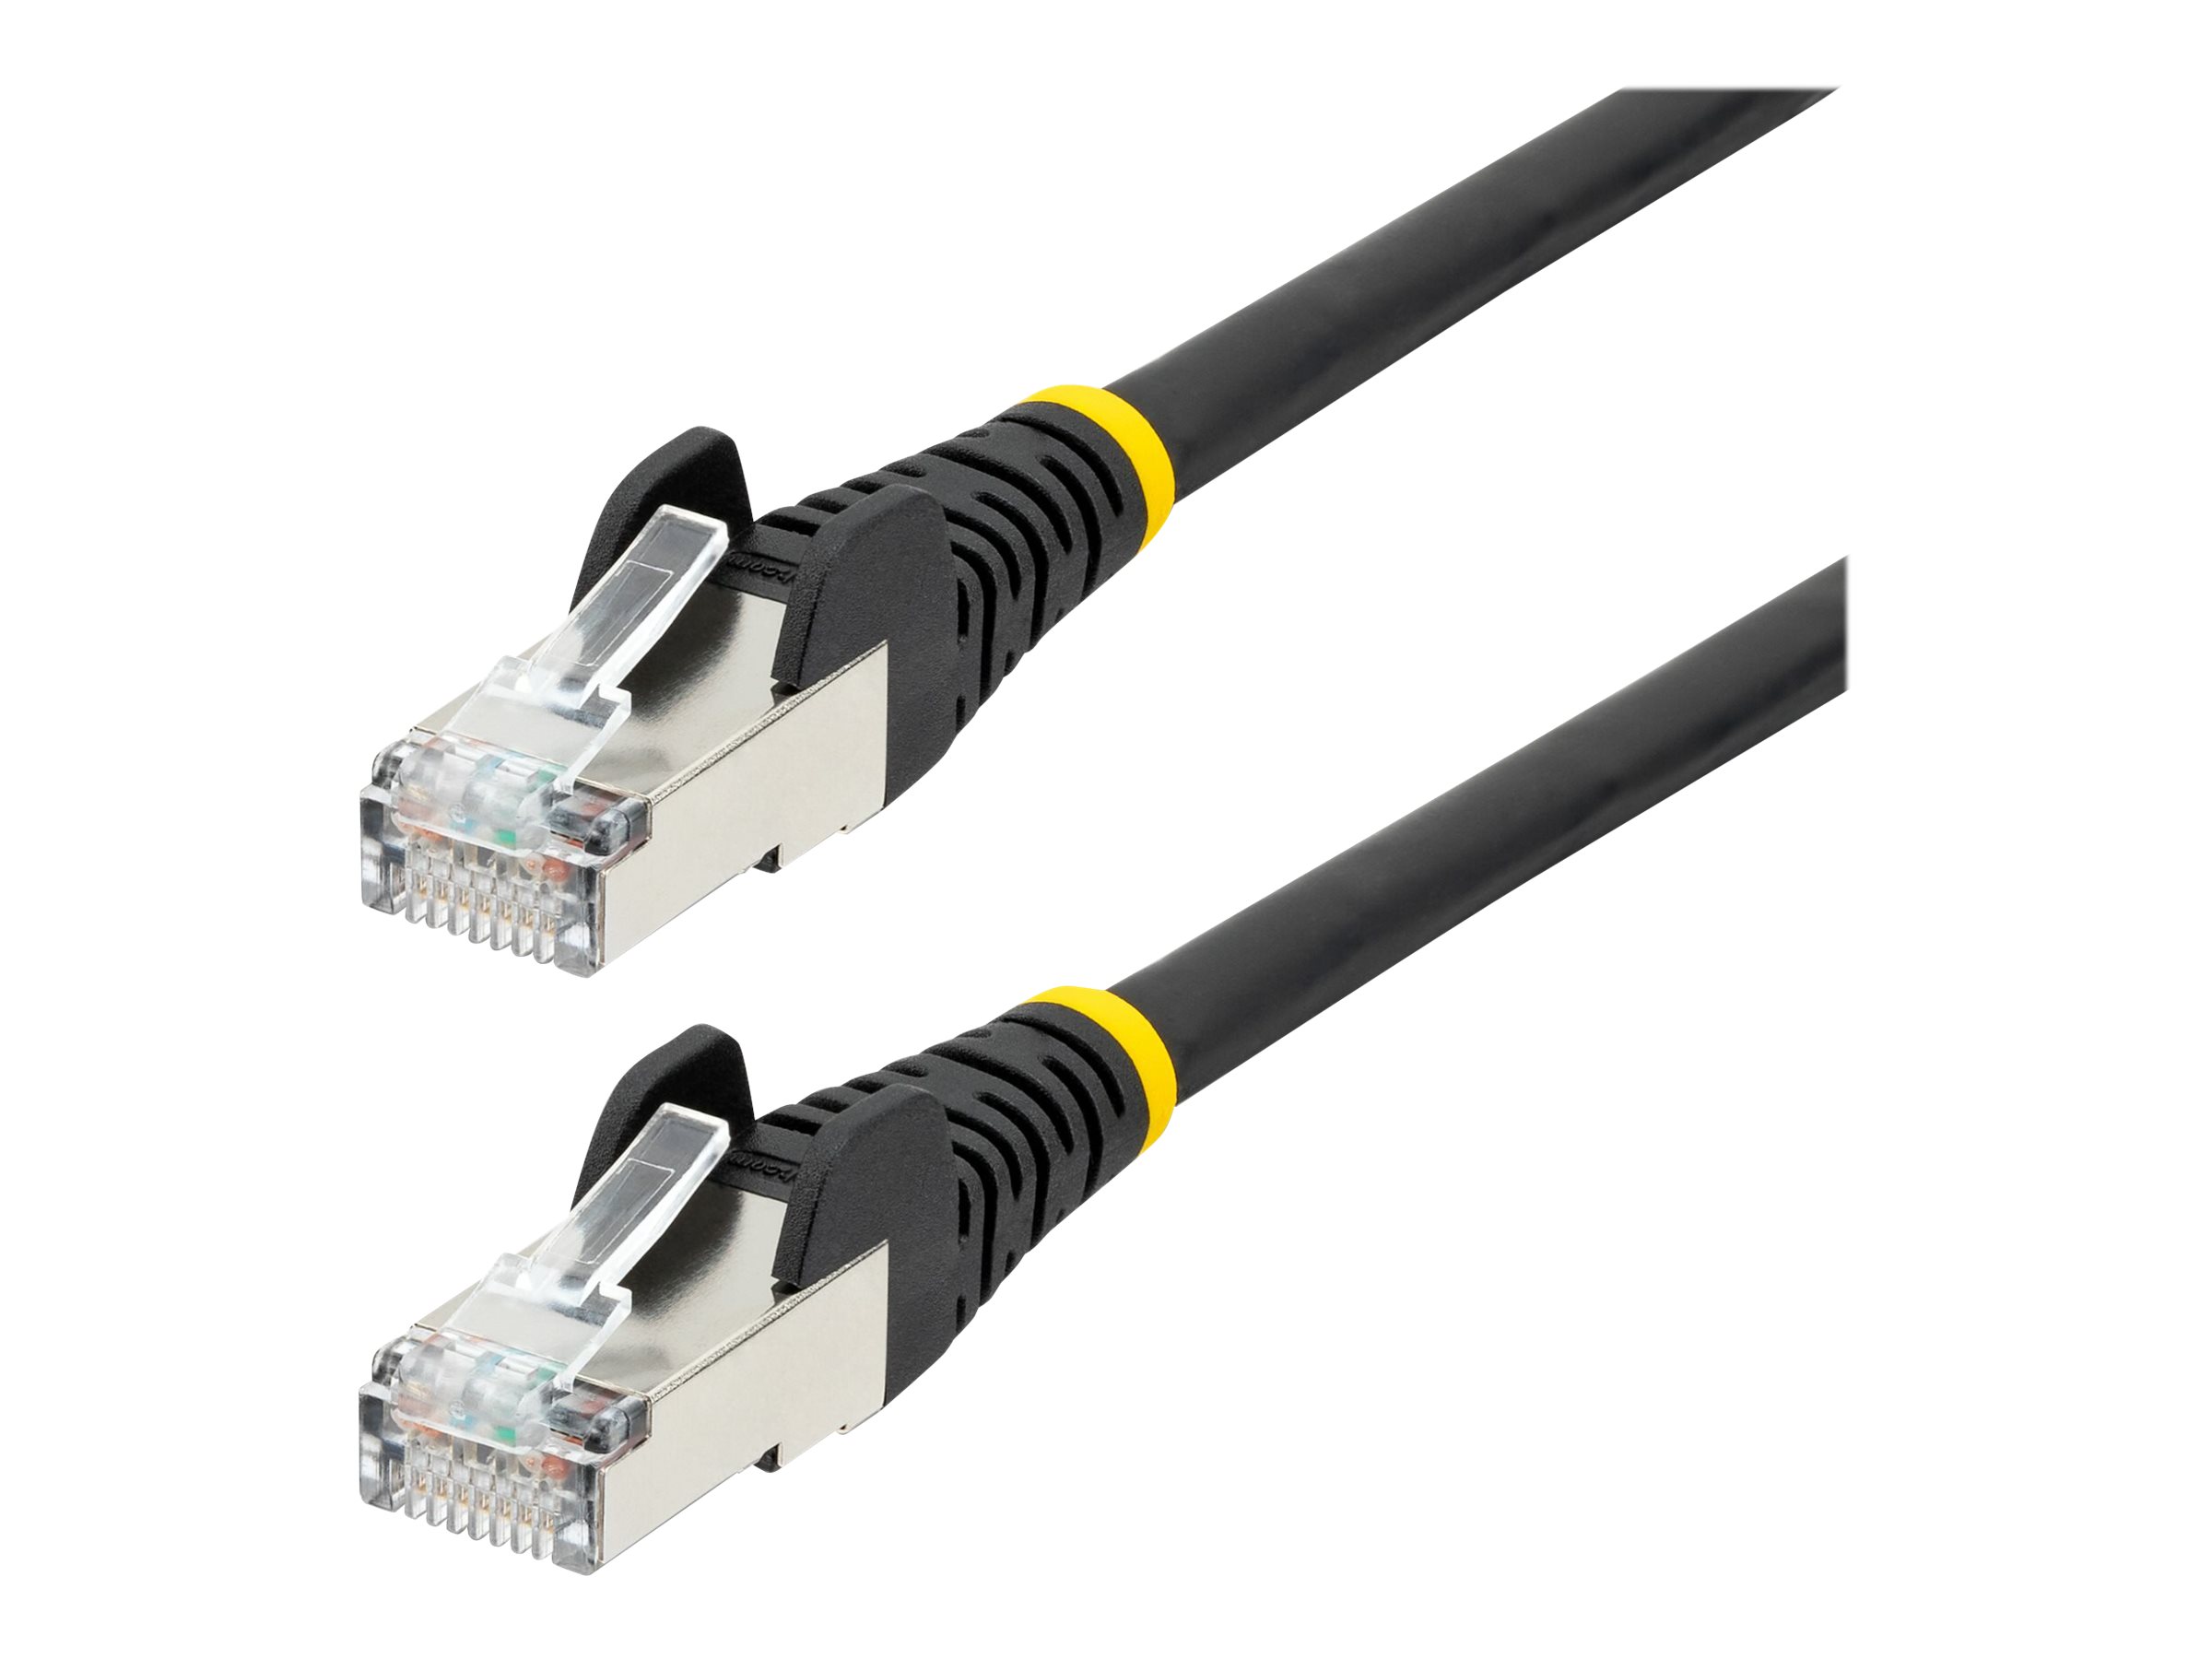 StarTech.com 1.5m CAT6a Ethernet Cable - Black - Low Smoke Zero Halogen (LSZH) - 10GbE 500MHz 100W PoE++ Snagless RJ-45 w/Strain Reliefs S/FTP Network Patch Cord - Cordon de raccordement - RJ-45 (M) pour RJ-45 (M) - 1.5 m - S/FTP - CAT 6a - IEEE 802.3bt - sans halogène, moulé, sans crochet, bloqué - noir - NLBK-150-CAT6A-PATCH - Câbles à paire torsadée